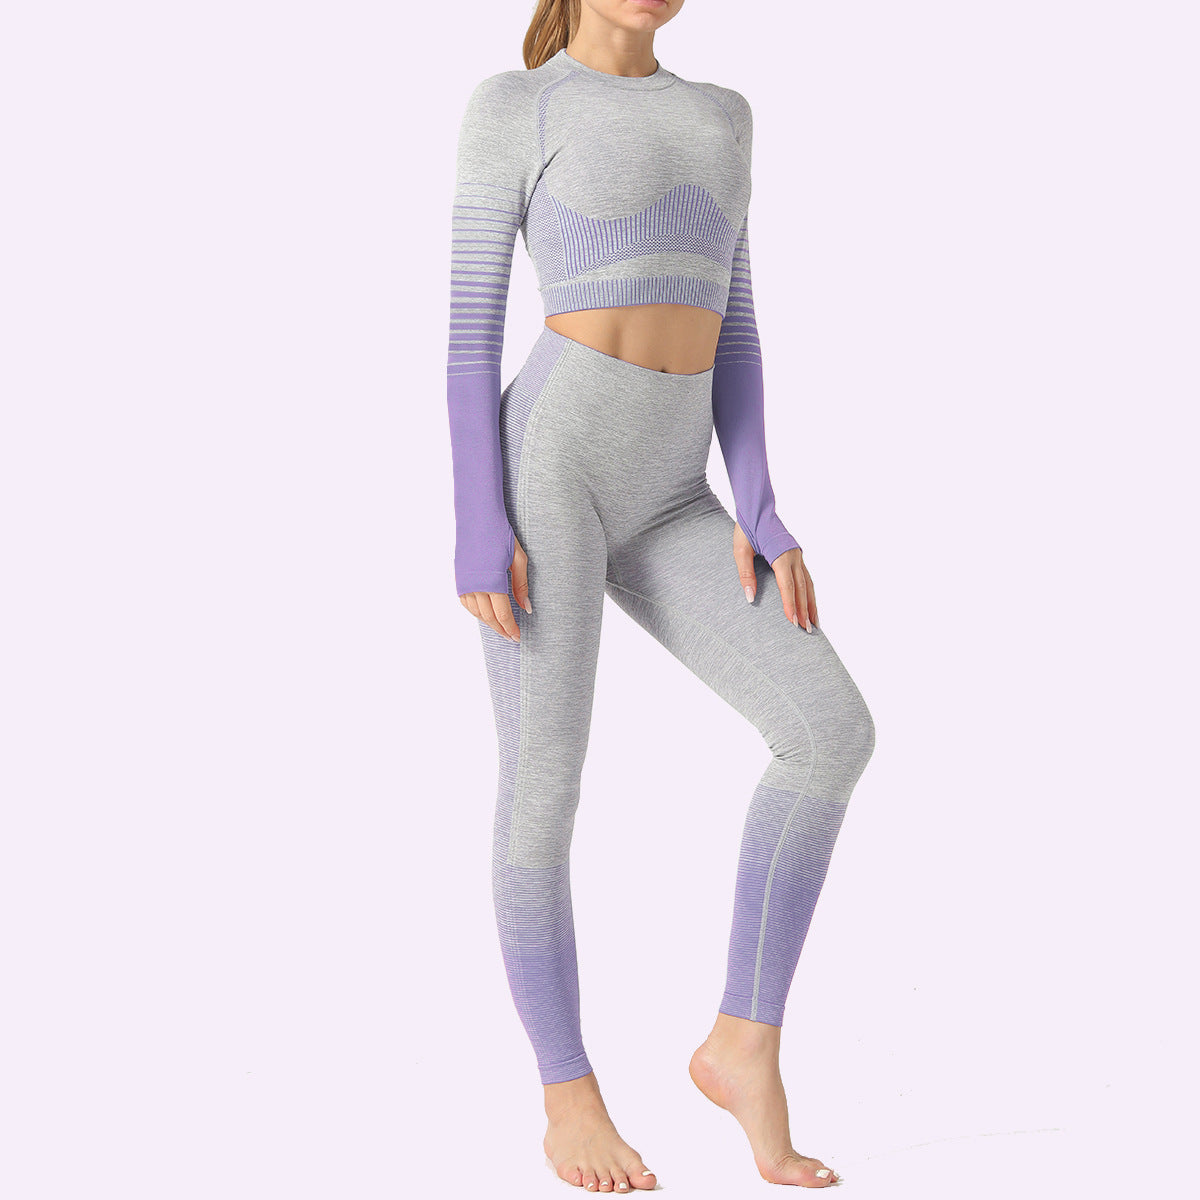 Women's Yoga Active Wear Crop Top and Leggings Set